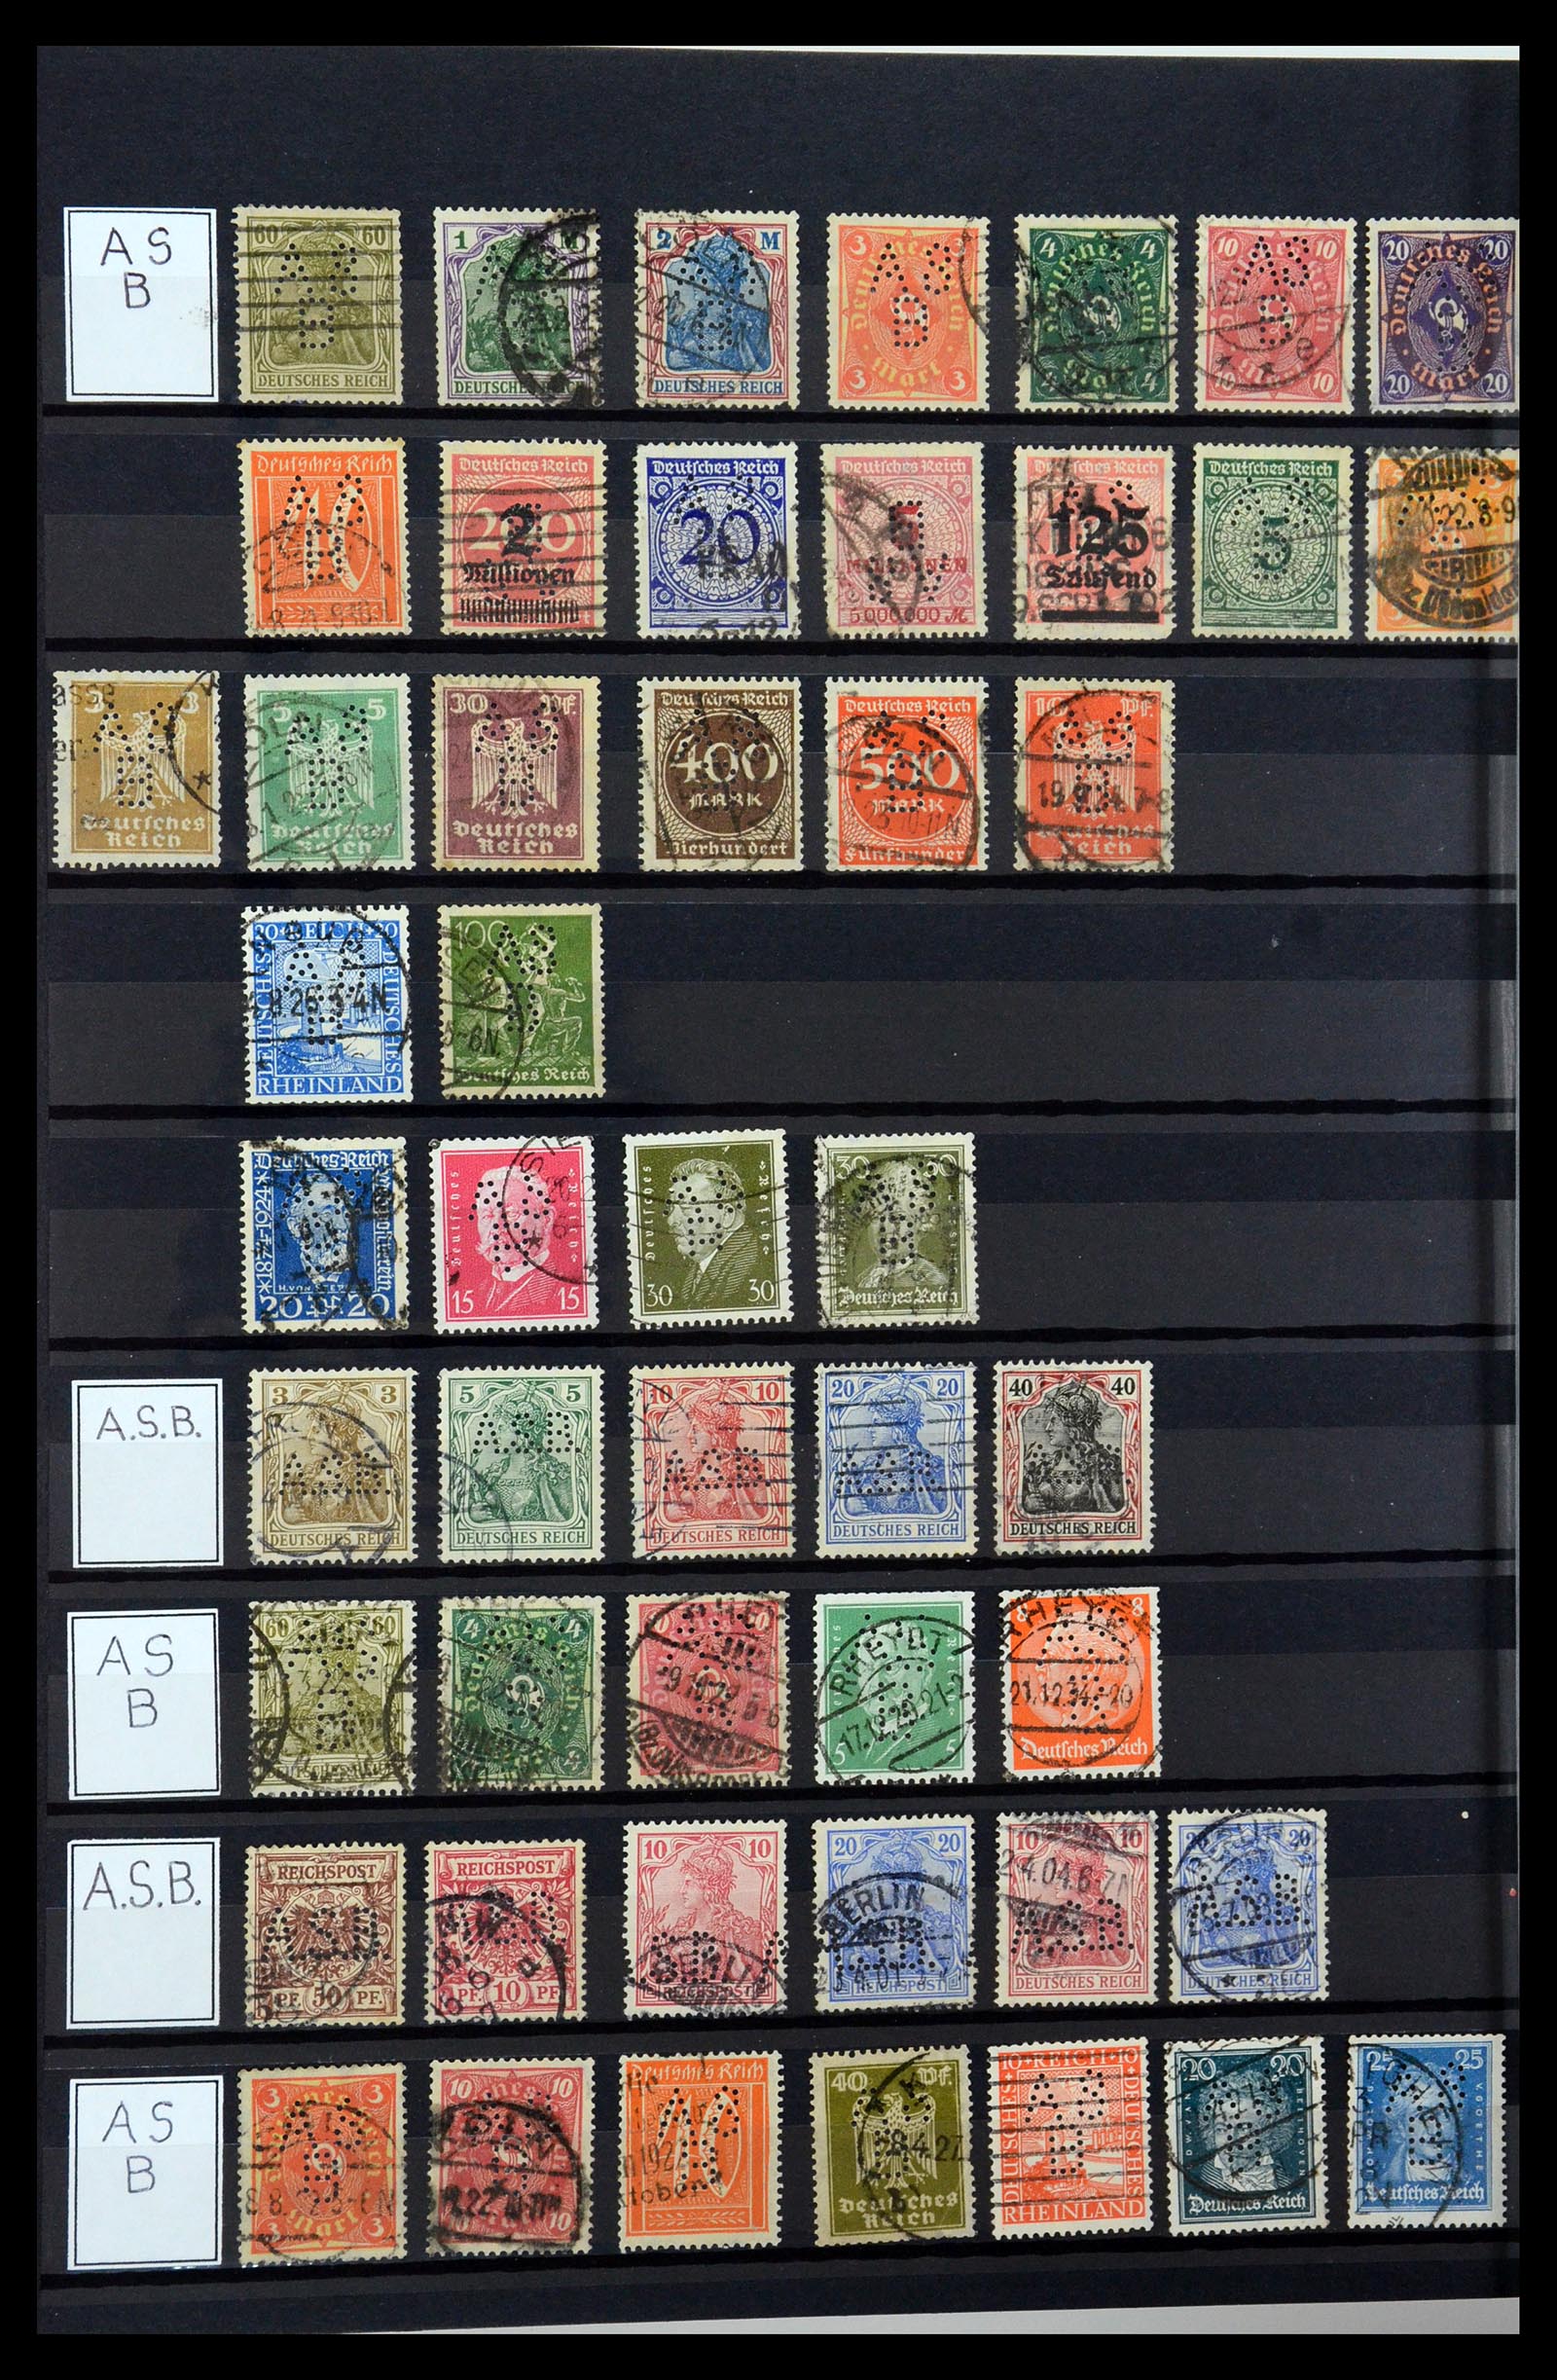 36405 026 - Stamp collection 36405 German Reich perfins 1880-1945.